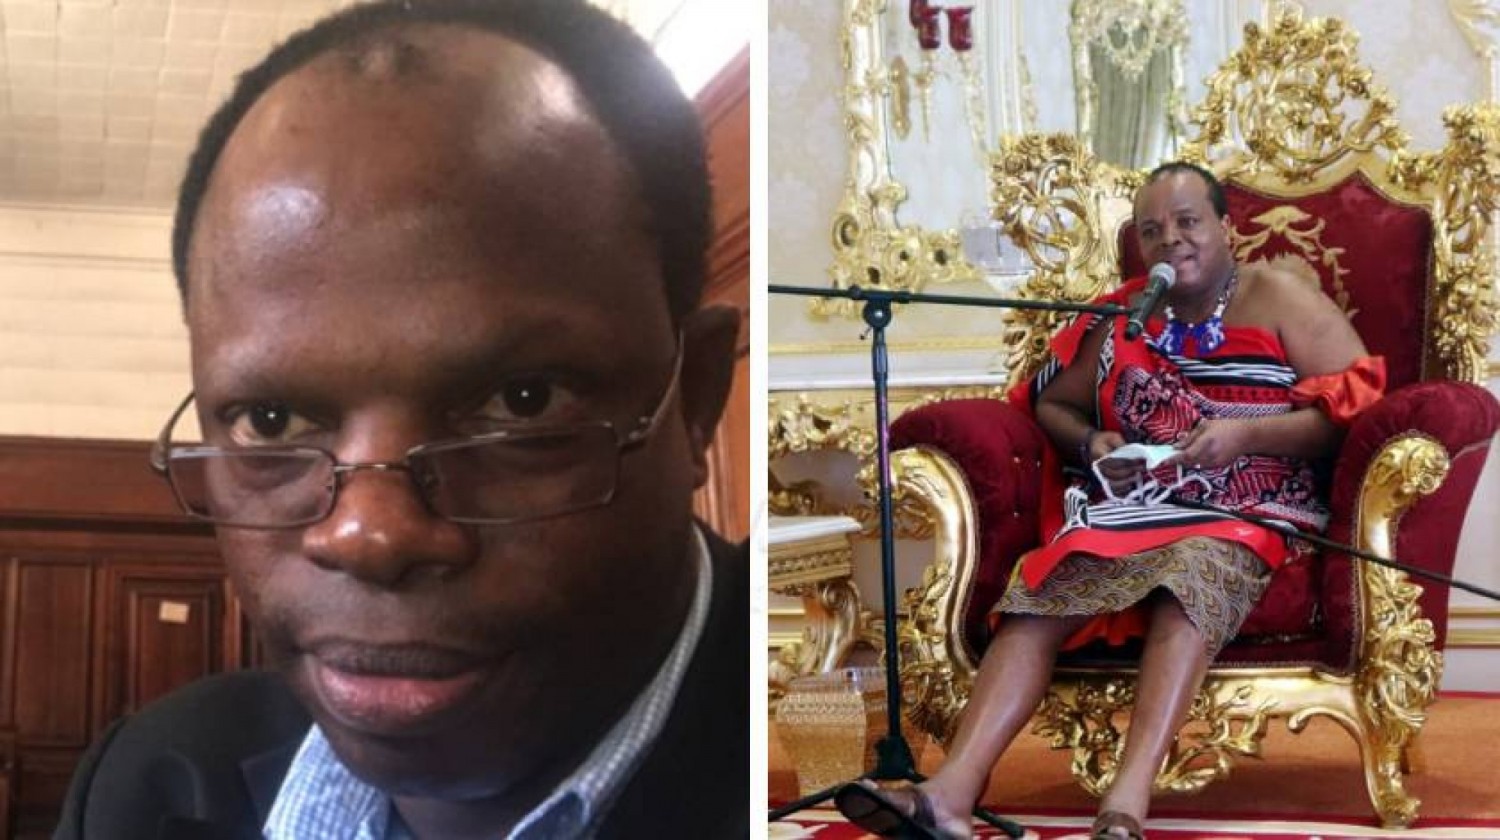 ESwatini : Assassinat d'un avocat et opposant influent, l'ONU réclame une enquête